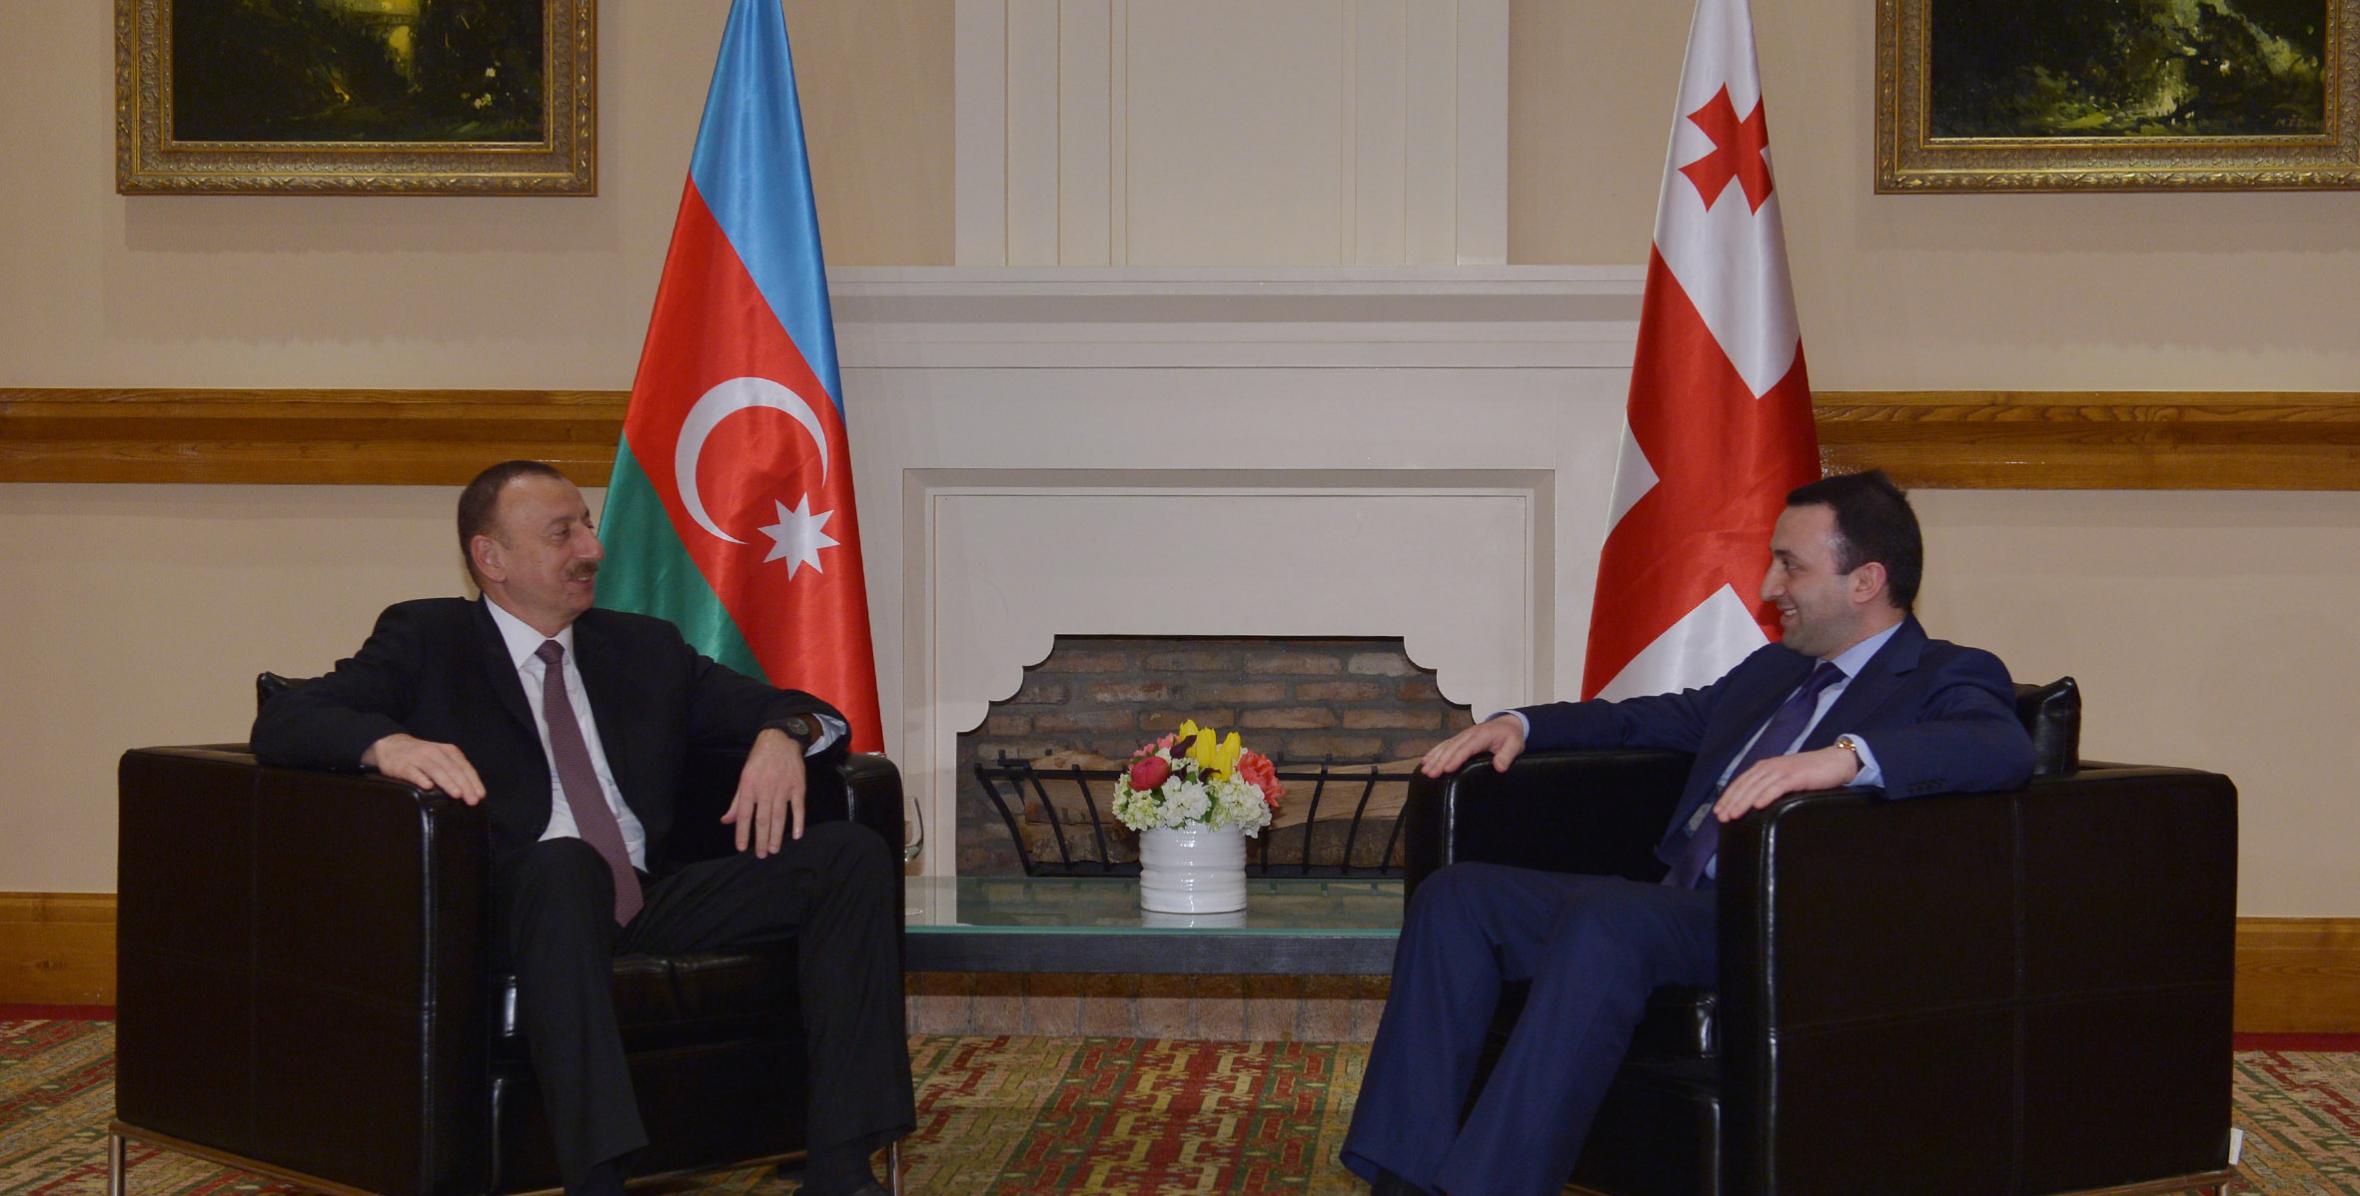 İlham Əliyevin Gürcüstanın Baş naziri İrakli Qaribaşvili ilə görüşü olmuşdur